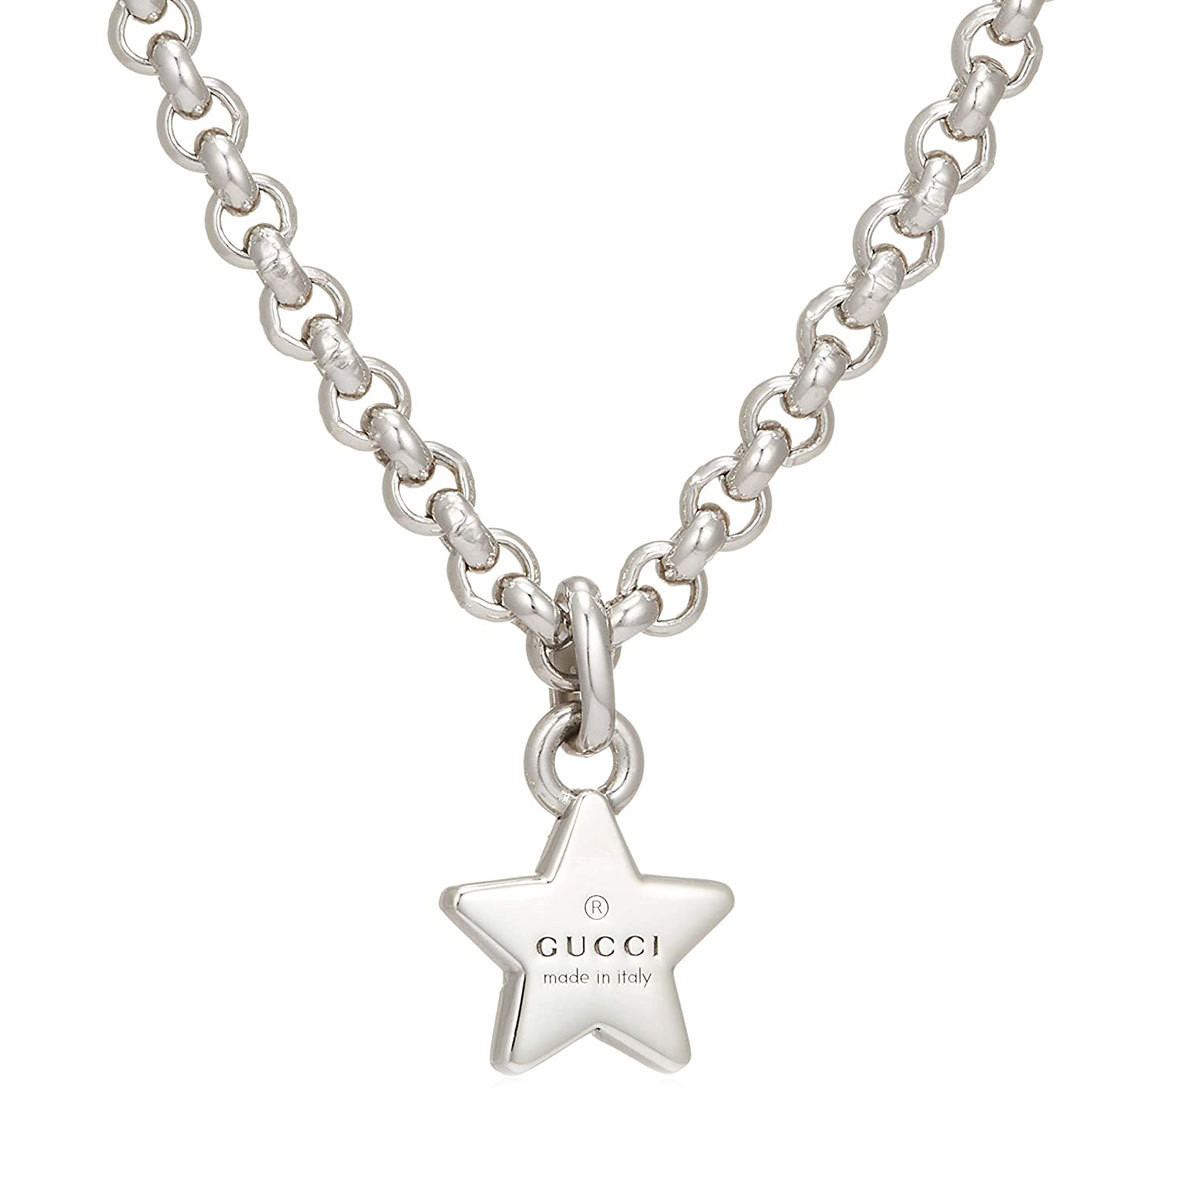 Star necklace with Gucci trademark - Fecarotta Gioielli